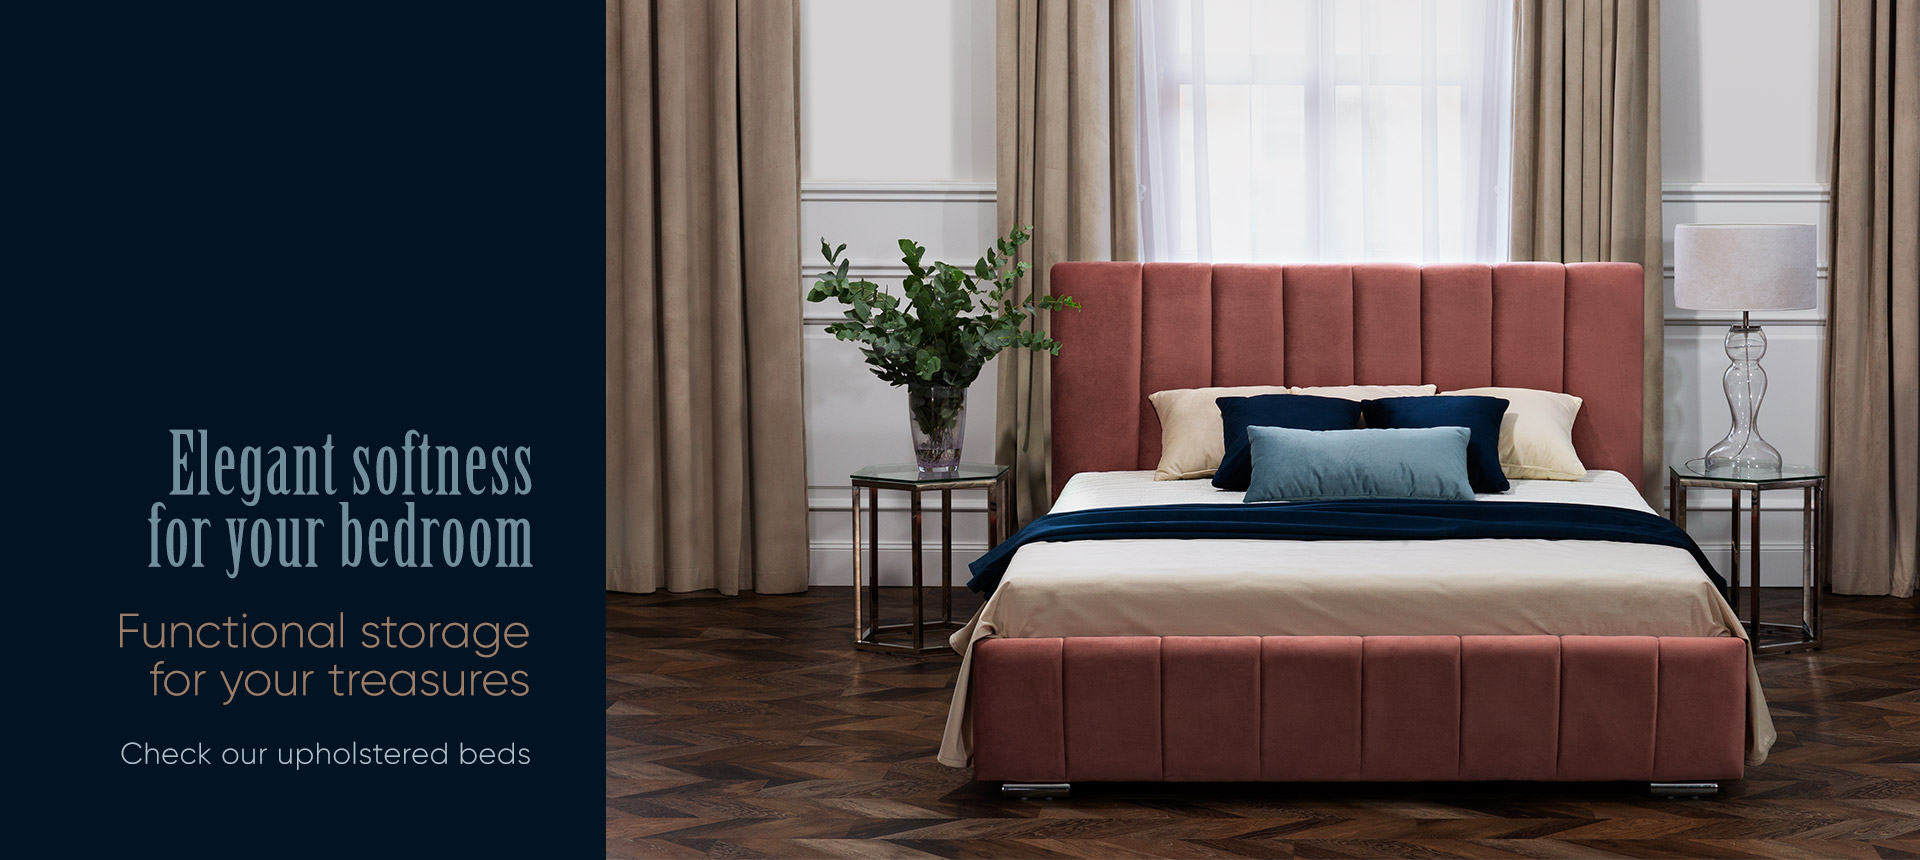 Upholstered beds - Online store Smart Furniture Mississauga